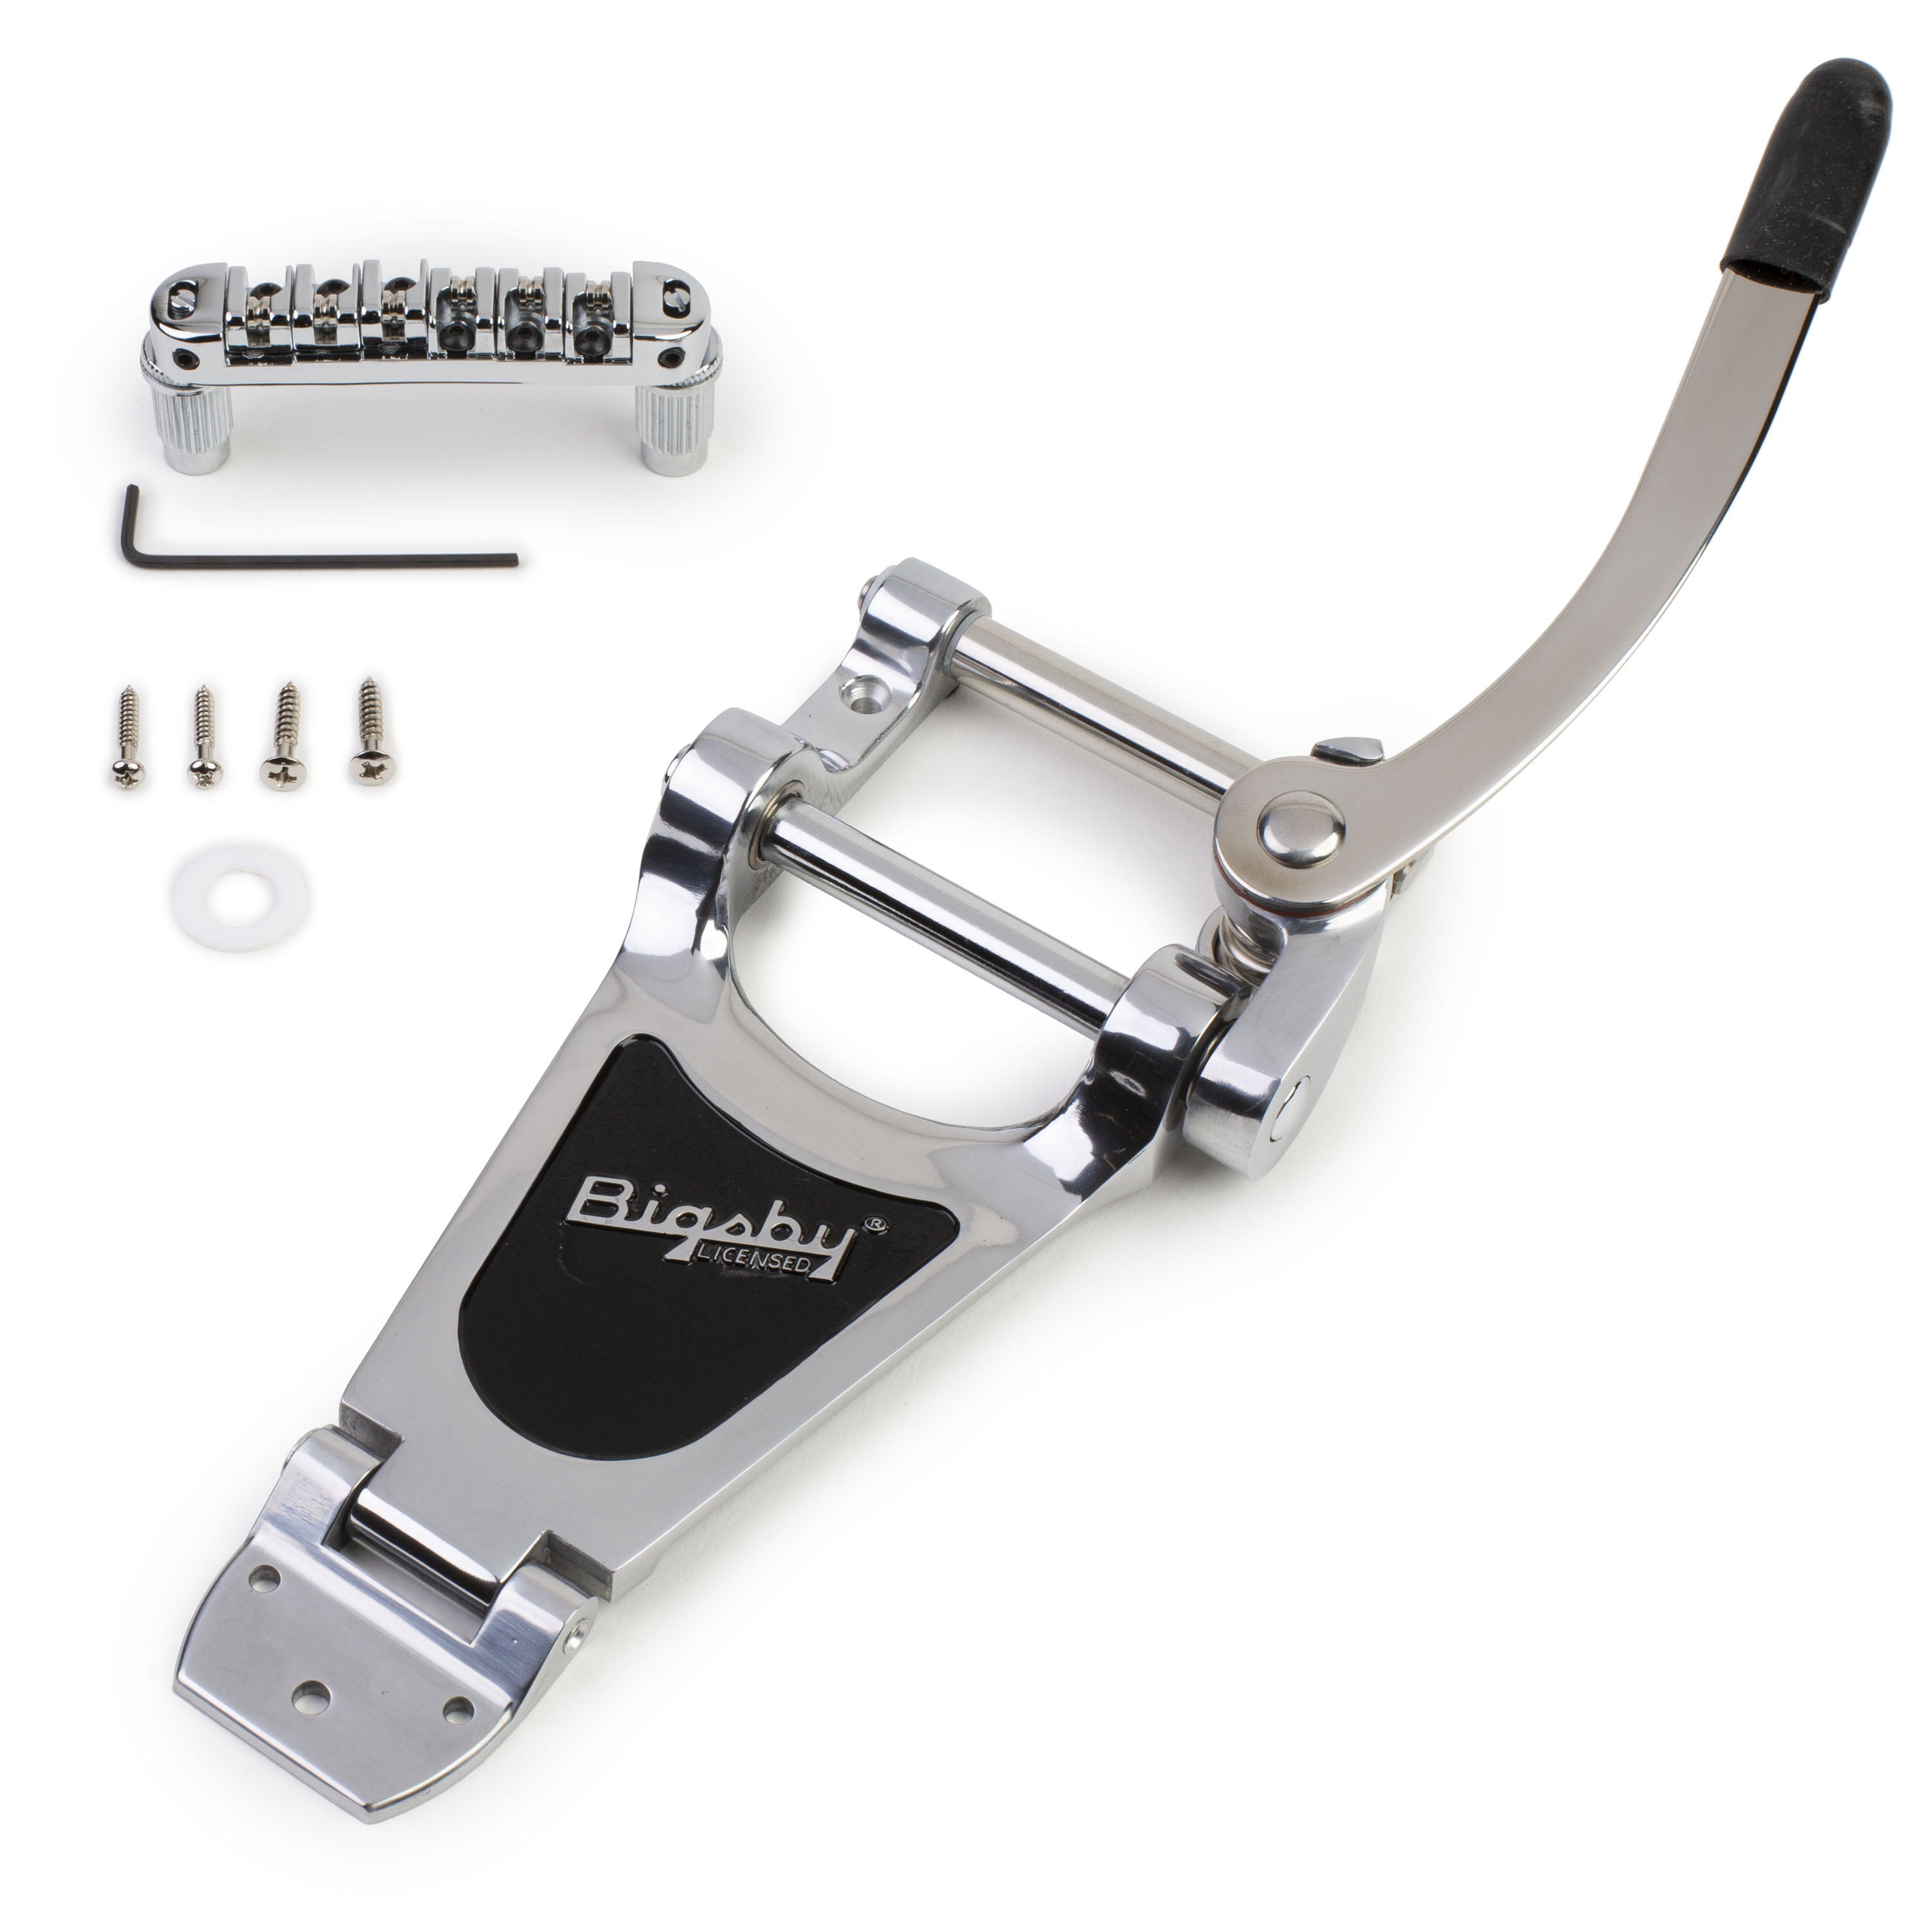 Bigsby 2 x Tremolo Vibrato Bridge Tailpiece Crank Bar w Strap Ferrule for Bigsby 